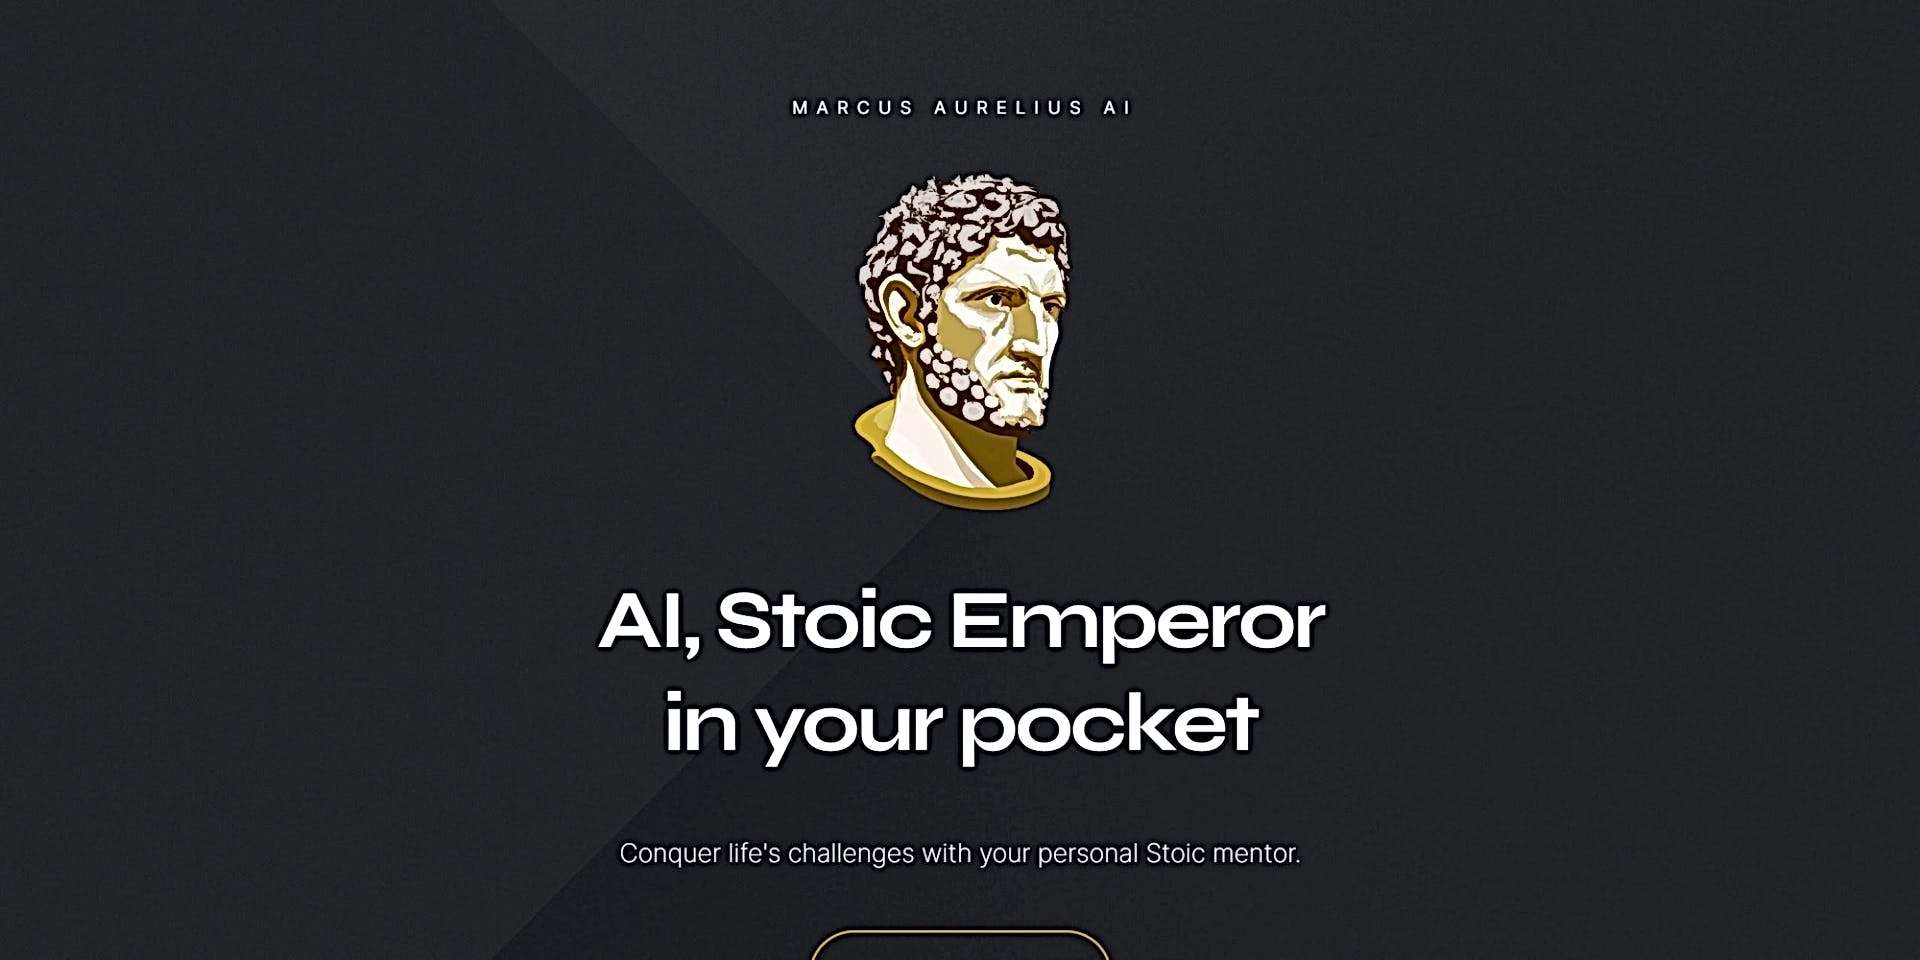 Marcus Aurelius AI featured